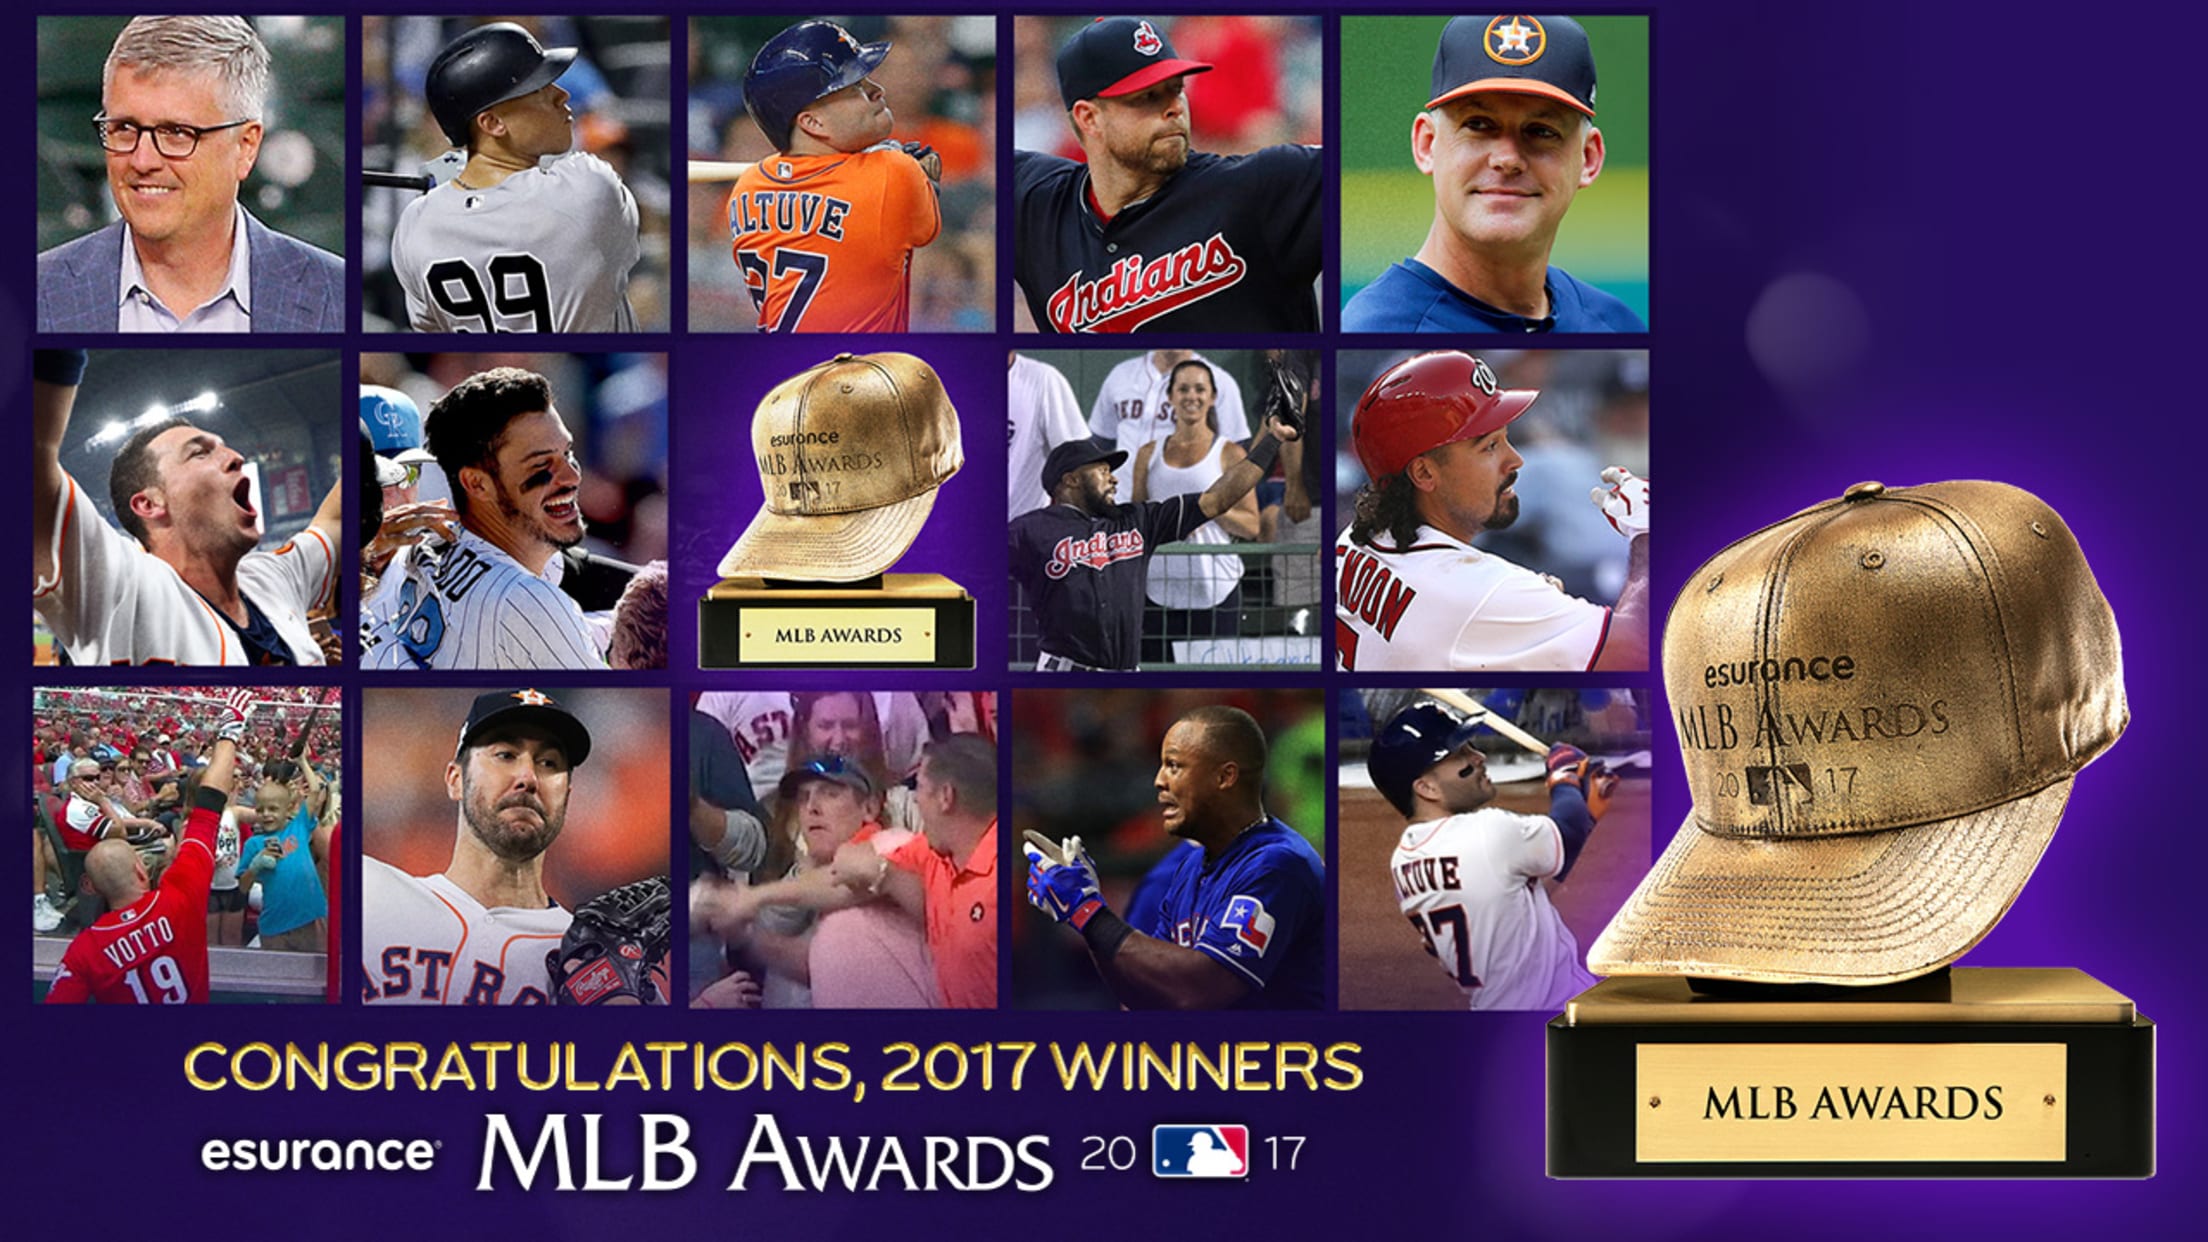 Major League Baseball - 2017 MLB Season Overview 